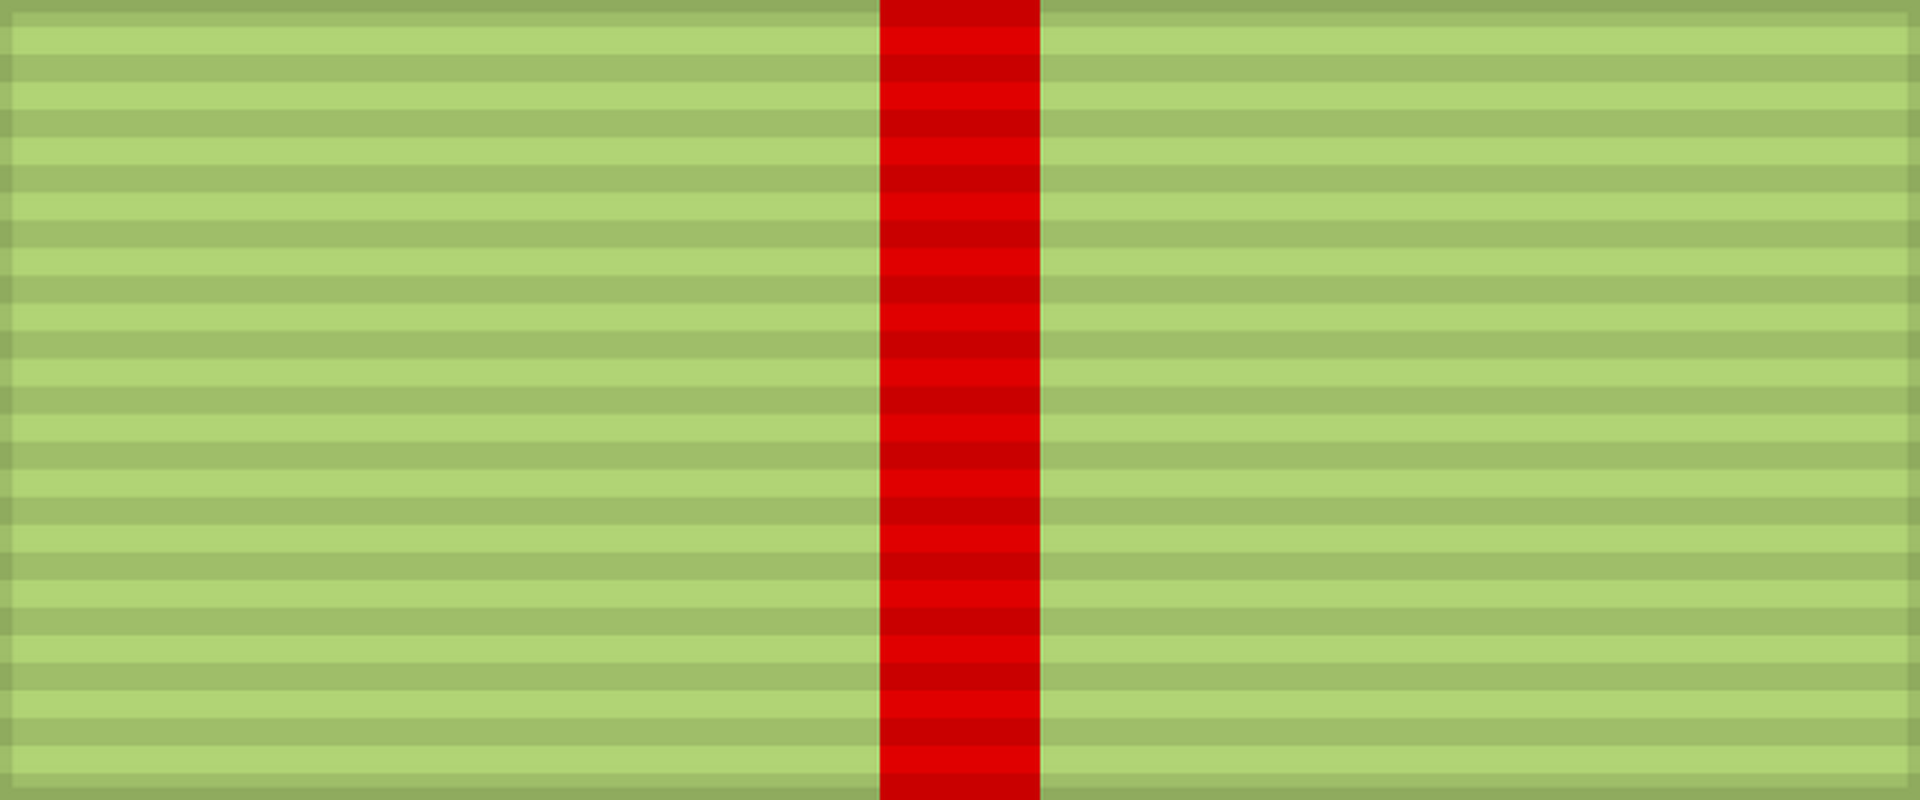 Лента медали «Партизану Отечественной войны» 1-й степени